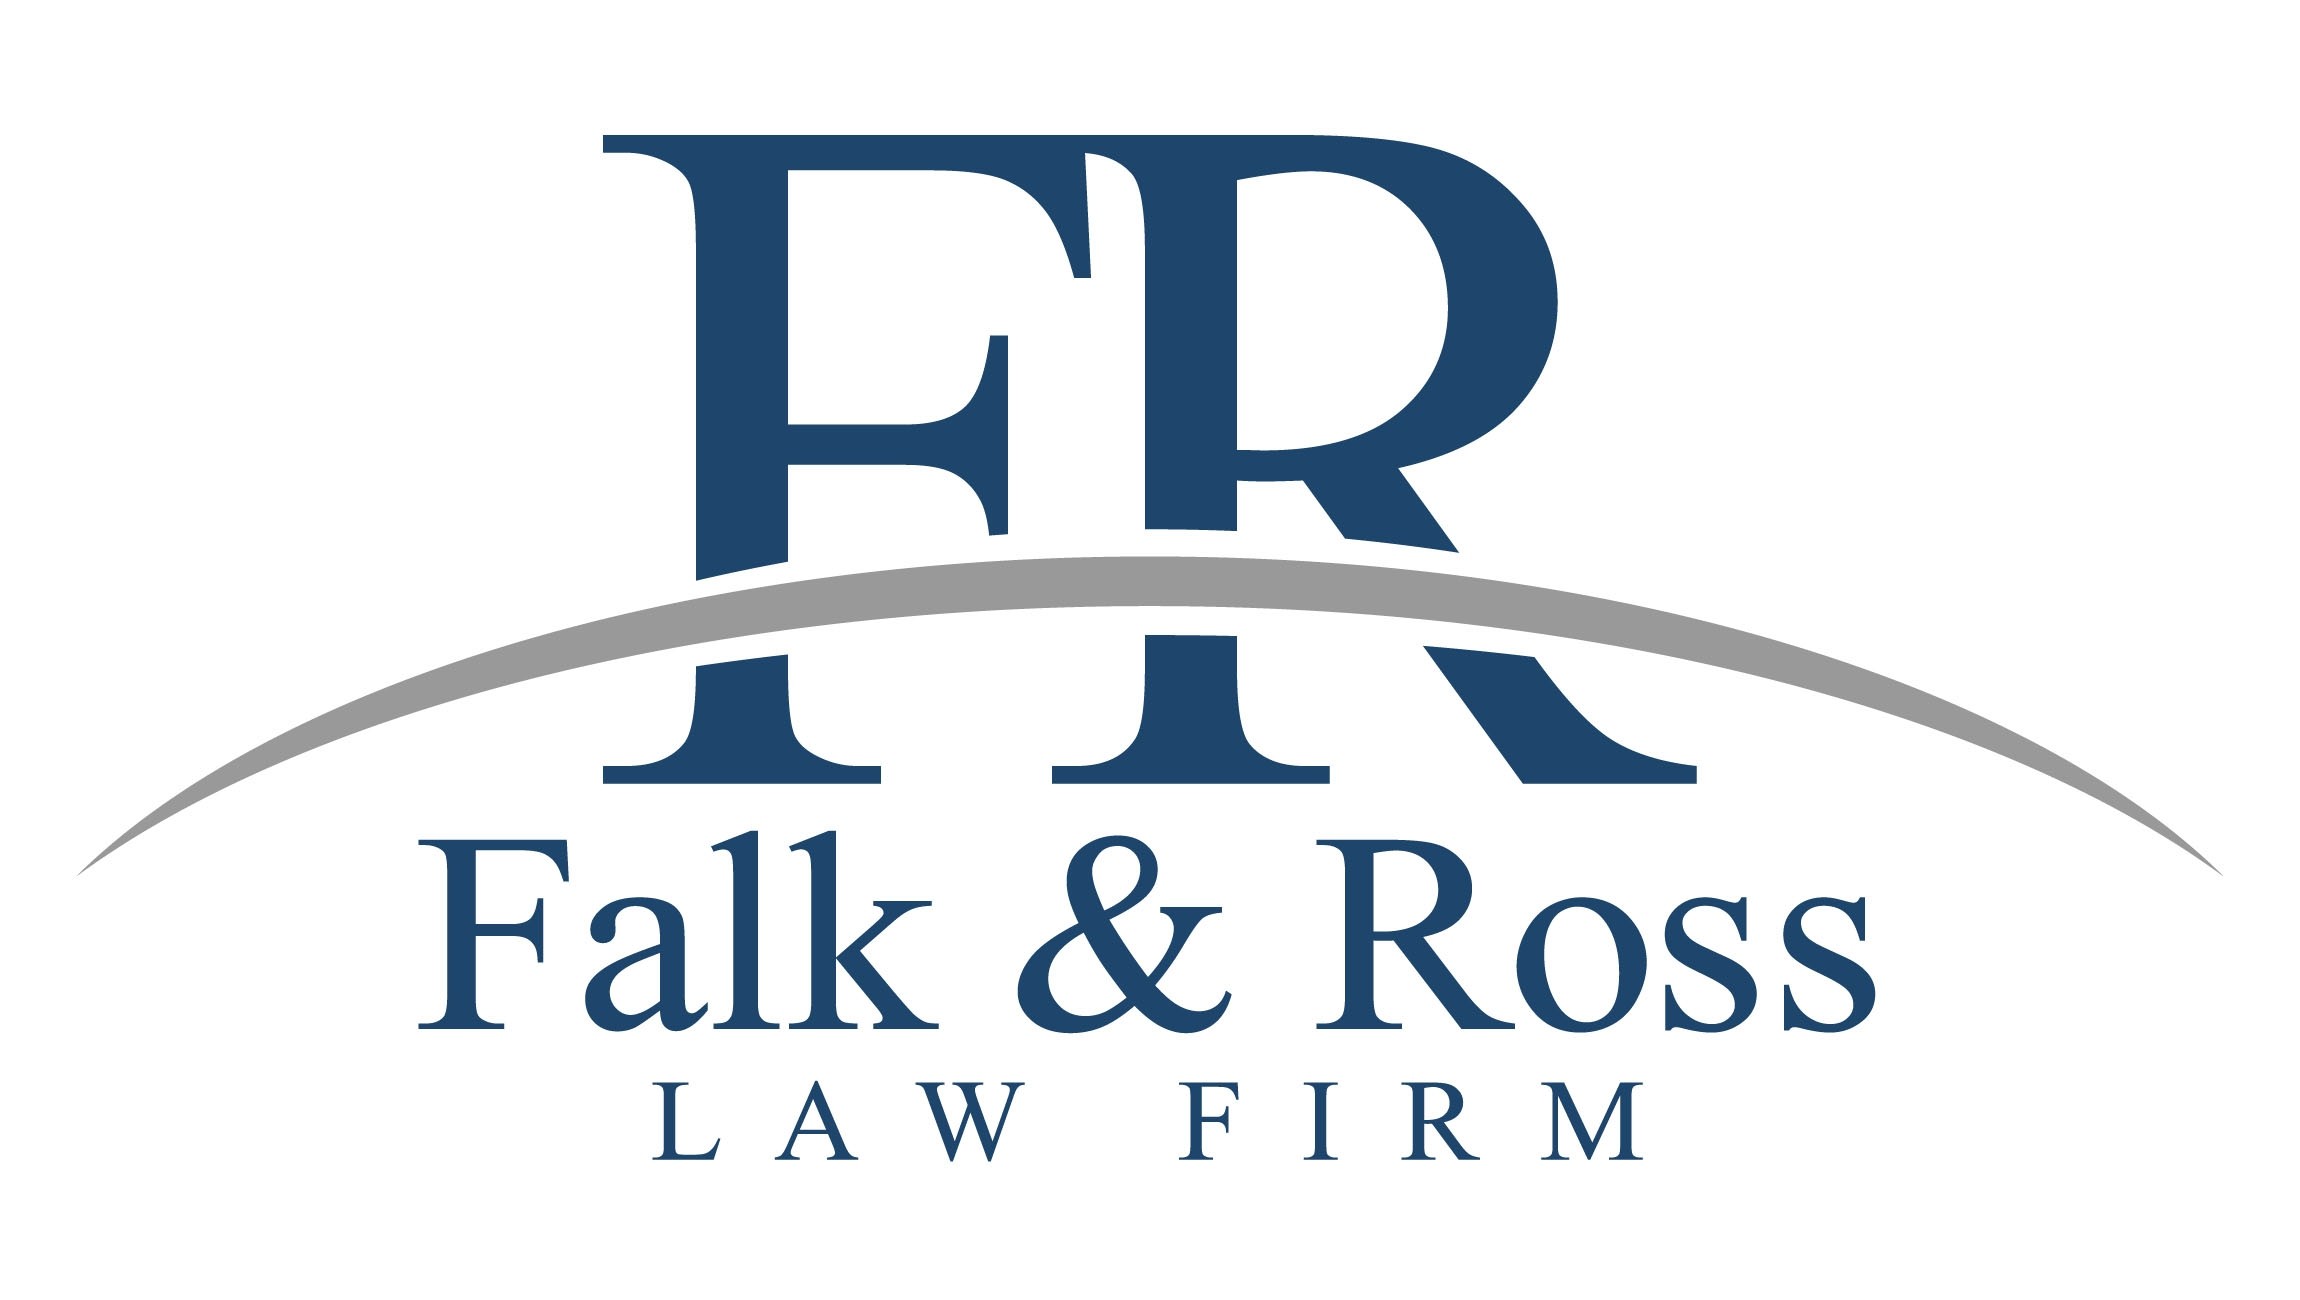 Falk & Ross Law Firm